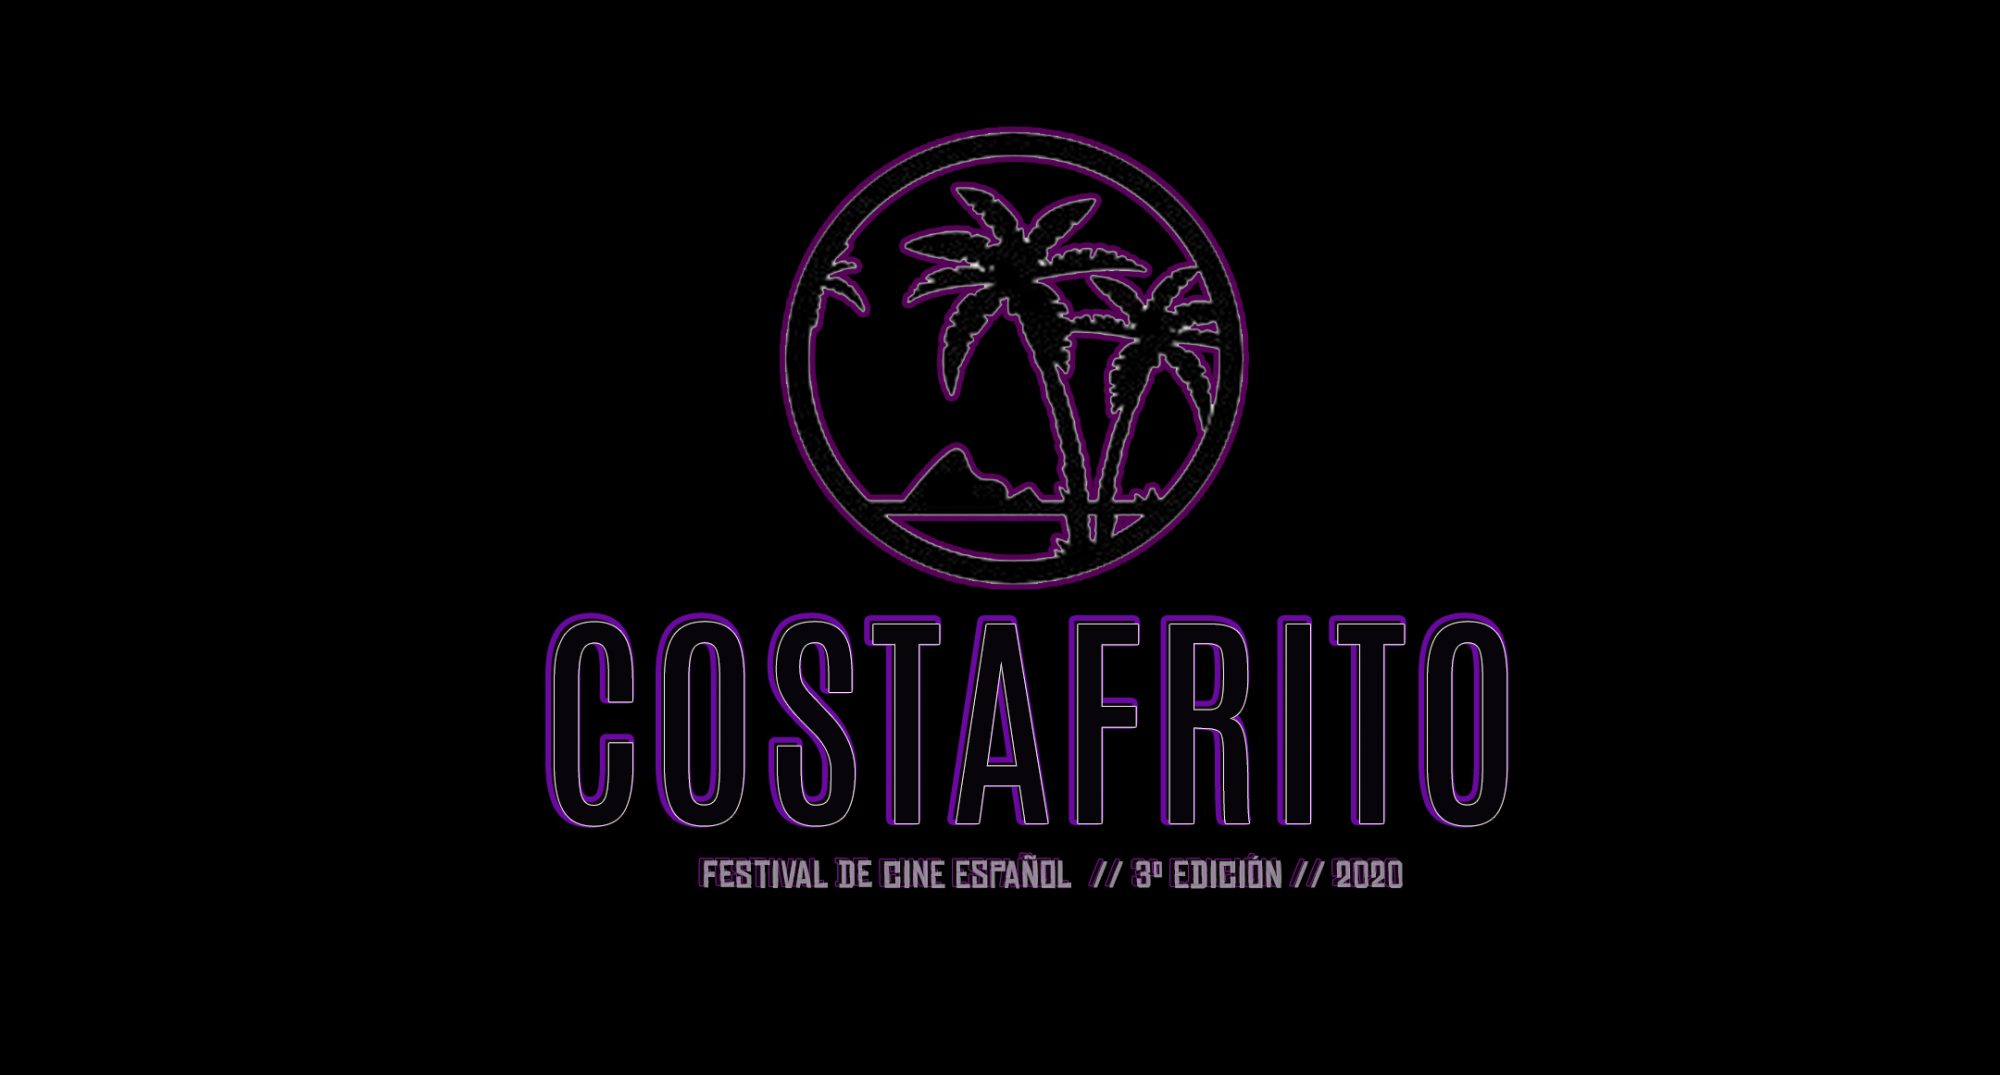 Costafrito Festival